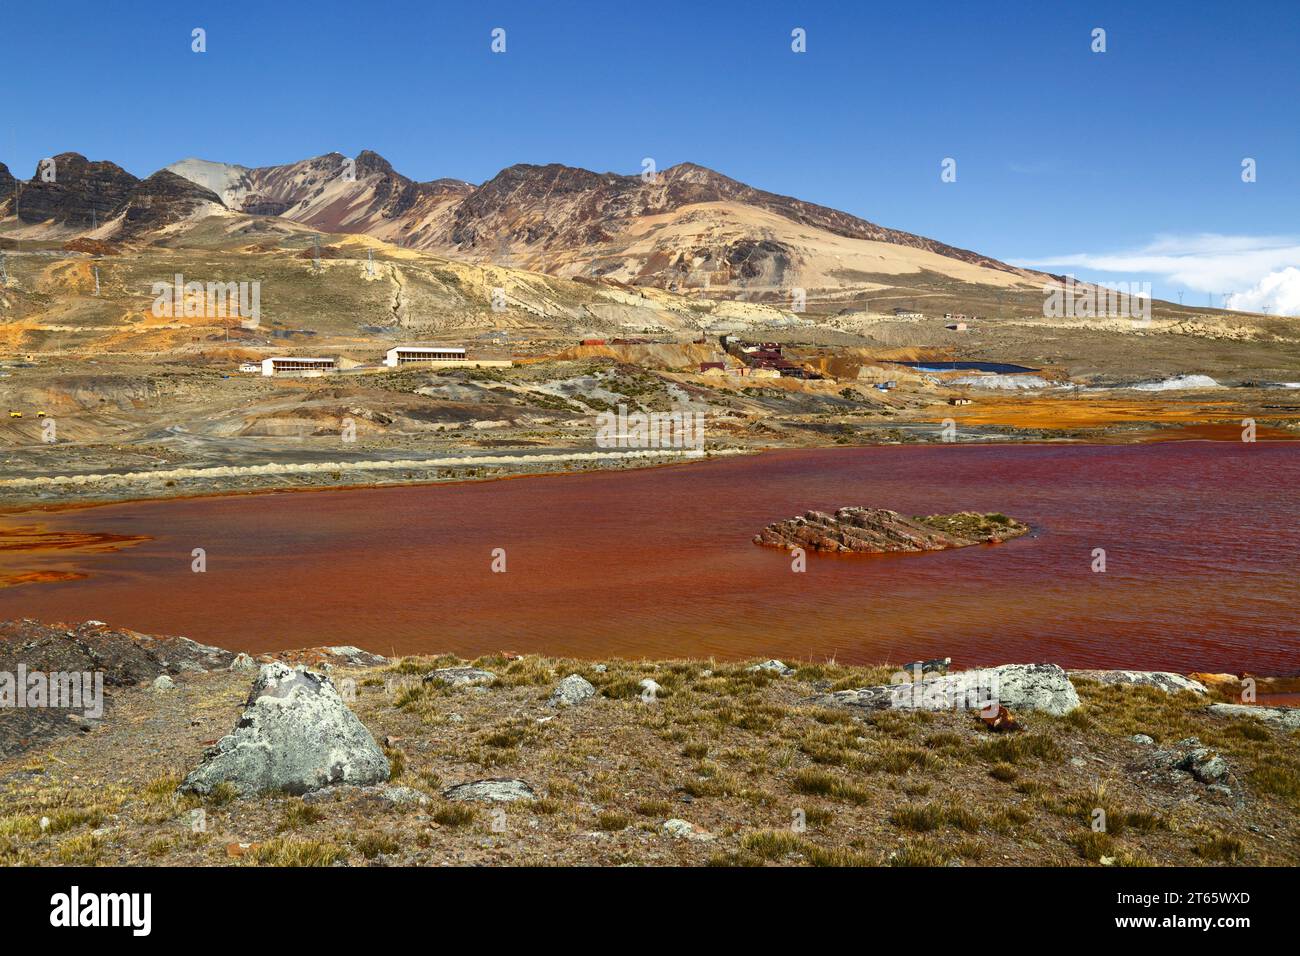 Vue sur le lac contaminé par le drainage minier acide et les déchets industriels de la mine d'étain voisine de Milluni (dont une partie peut être vue sur la rive éloignée et à flanc de montagne), près de la Paz, Bolivie. Les montagnes sont les contreforts du massif du Mont Chacaltaya. Banque D'Images